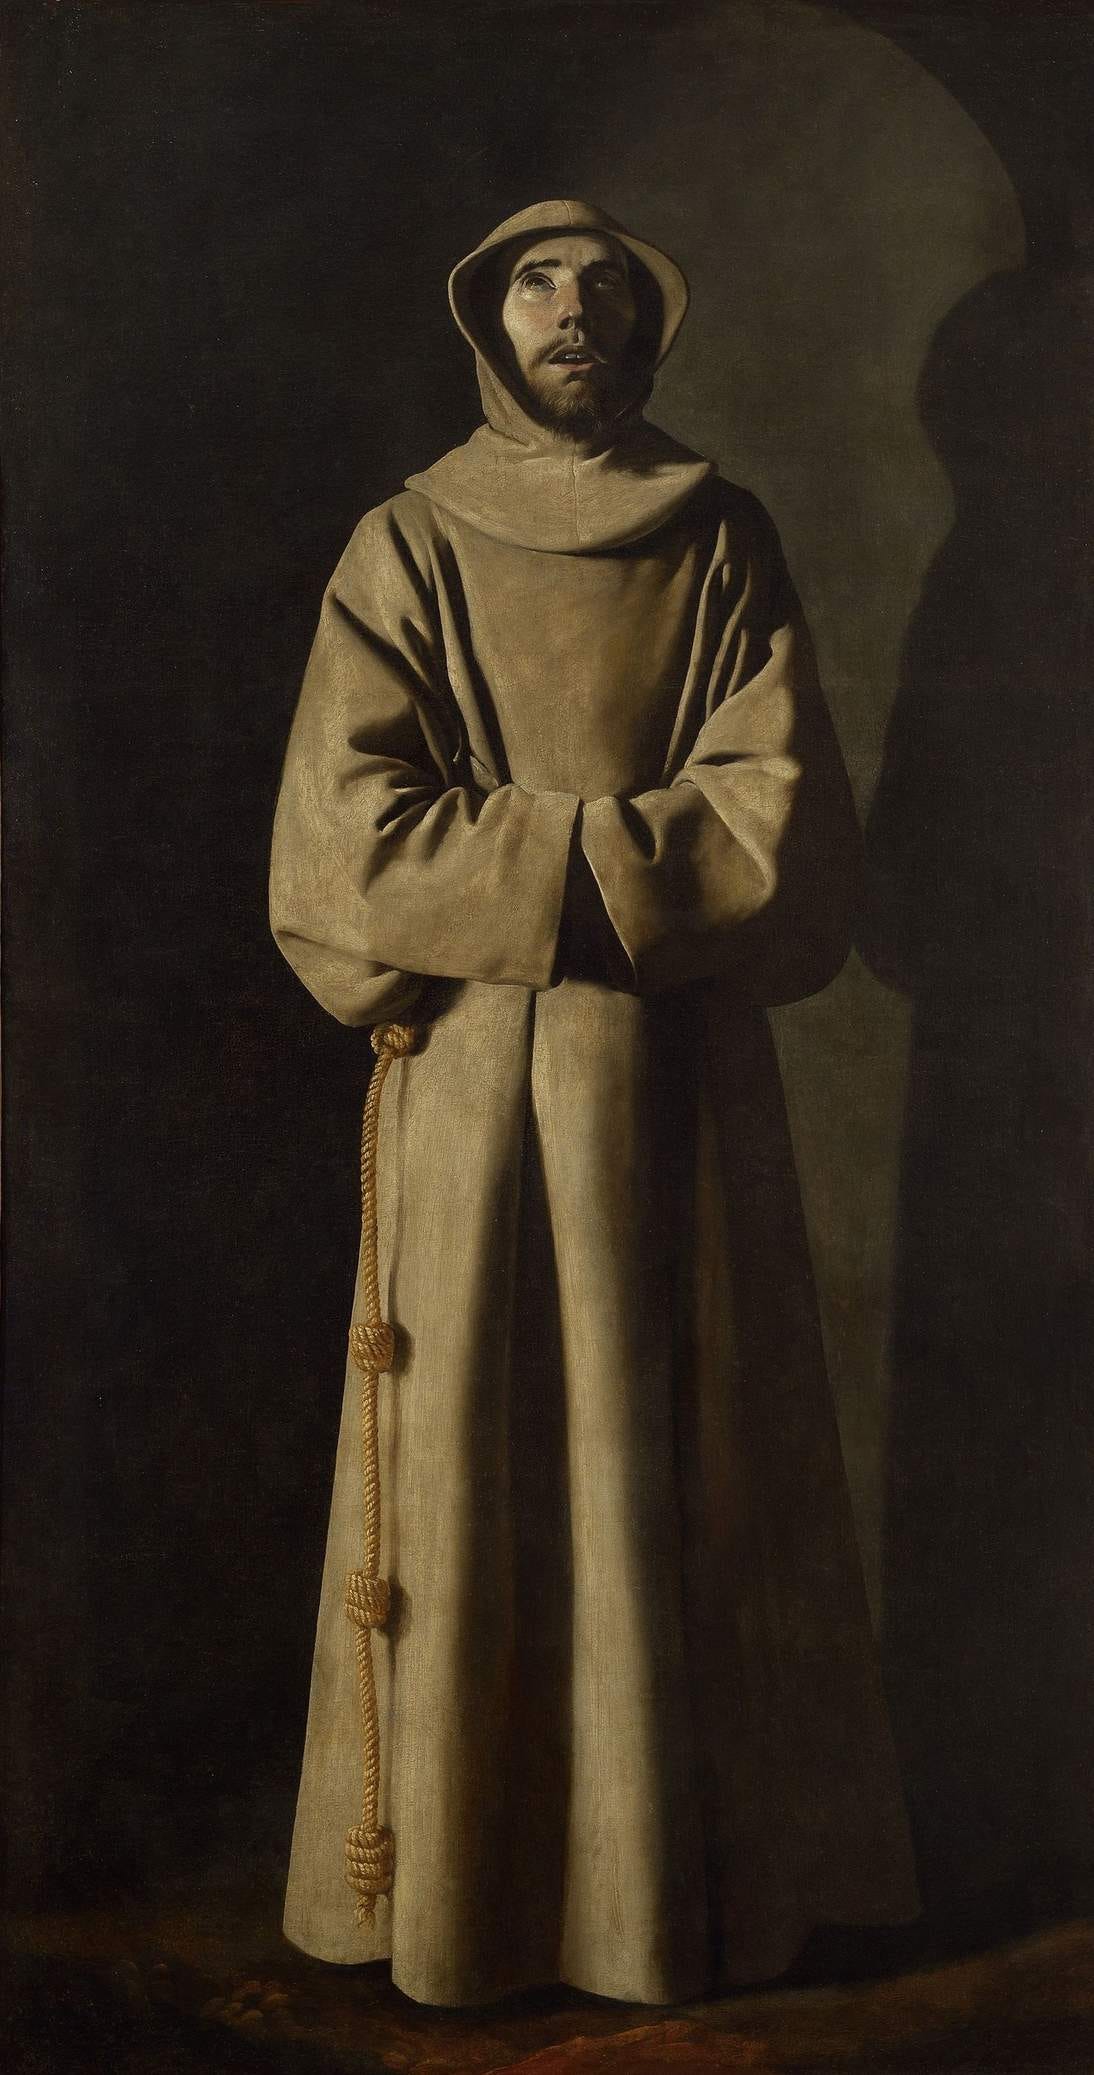 Francisco de Zurbarán, “Saint Francis of Assisi,” ca. 1650–1660. Oil on canvas, 77 ½ x 41 ¾ in. (197 x 106 cm). Musée des Beaux-Arts de Lyon, A115